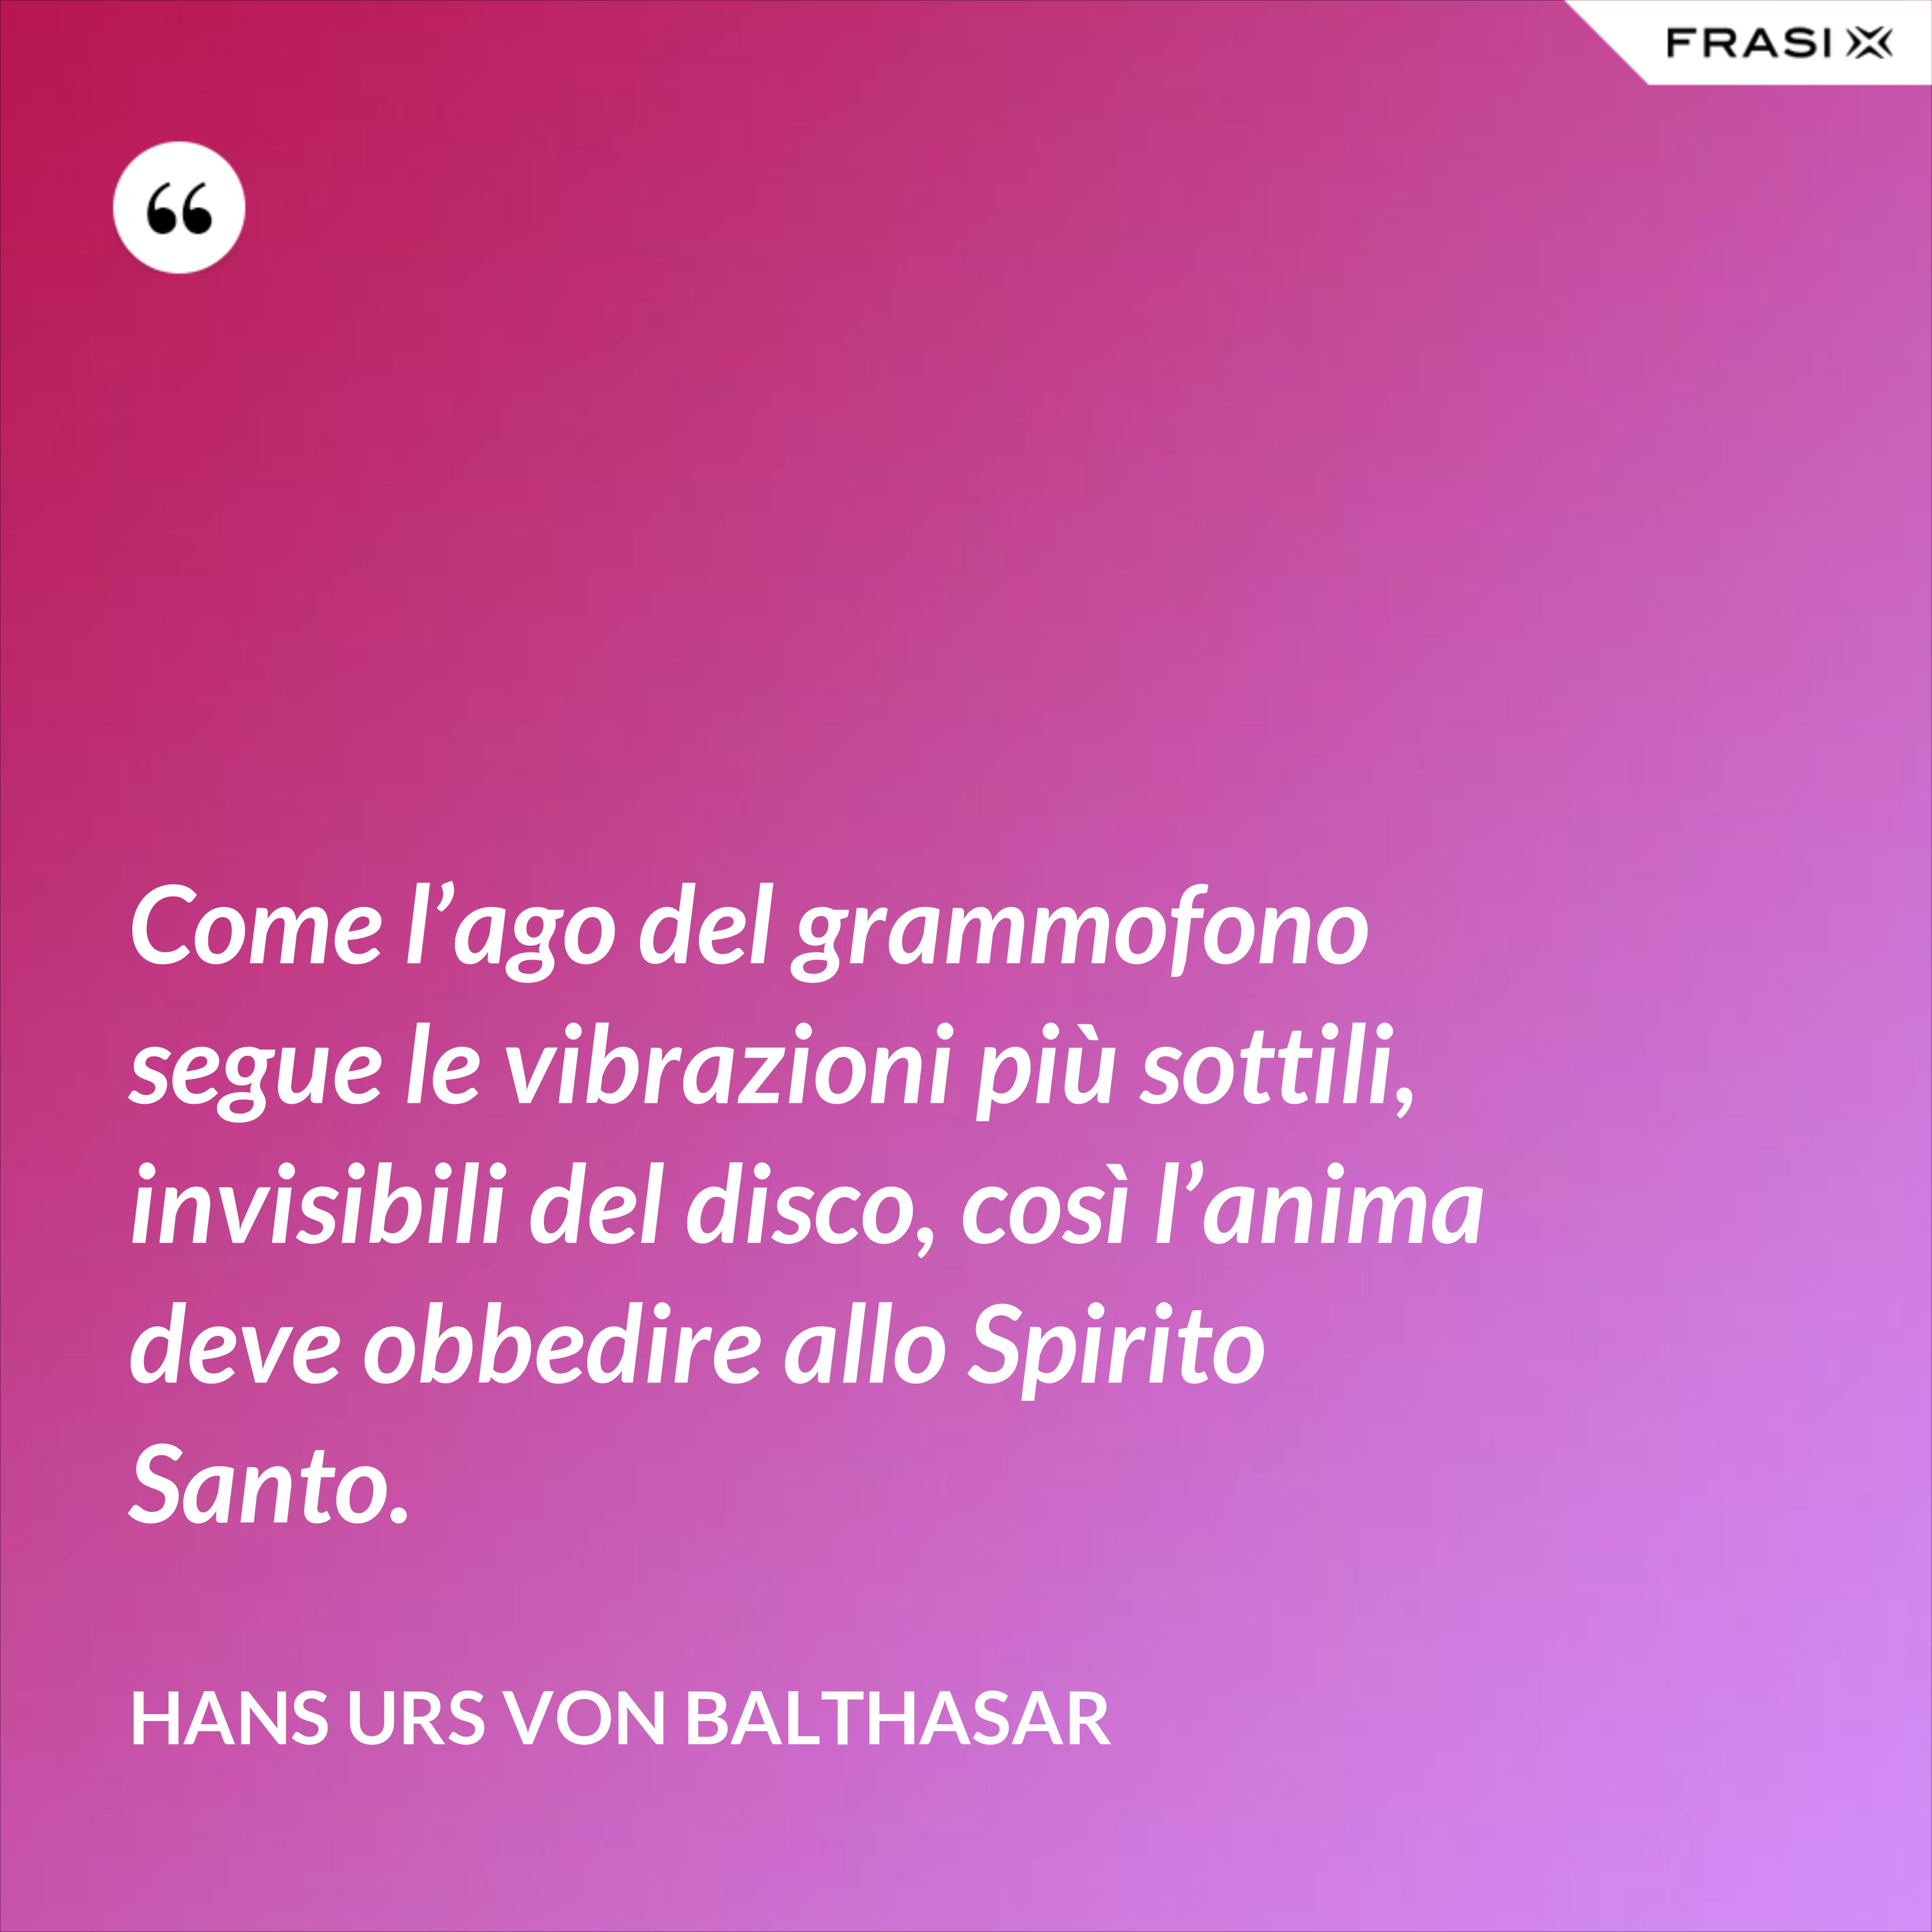 Come l’ago del grammofono segue le vibrazioni più sottili, invisibili del disco, così l’anima deve obbedire allo Spirito Santo. - Hans Urs Von Balthasar